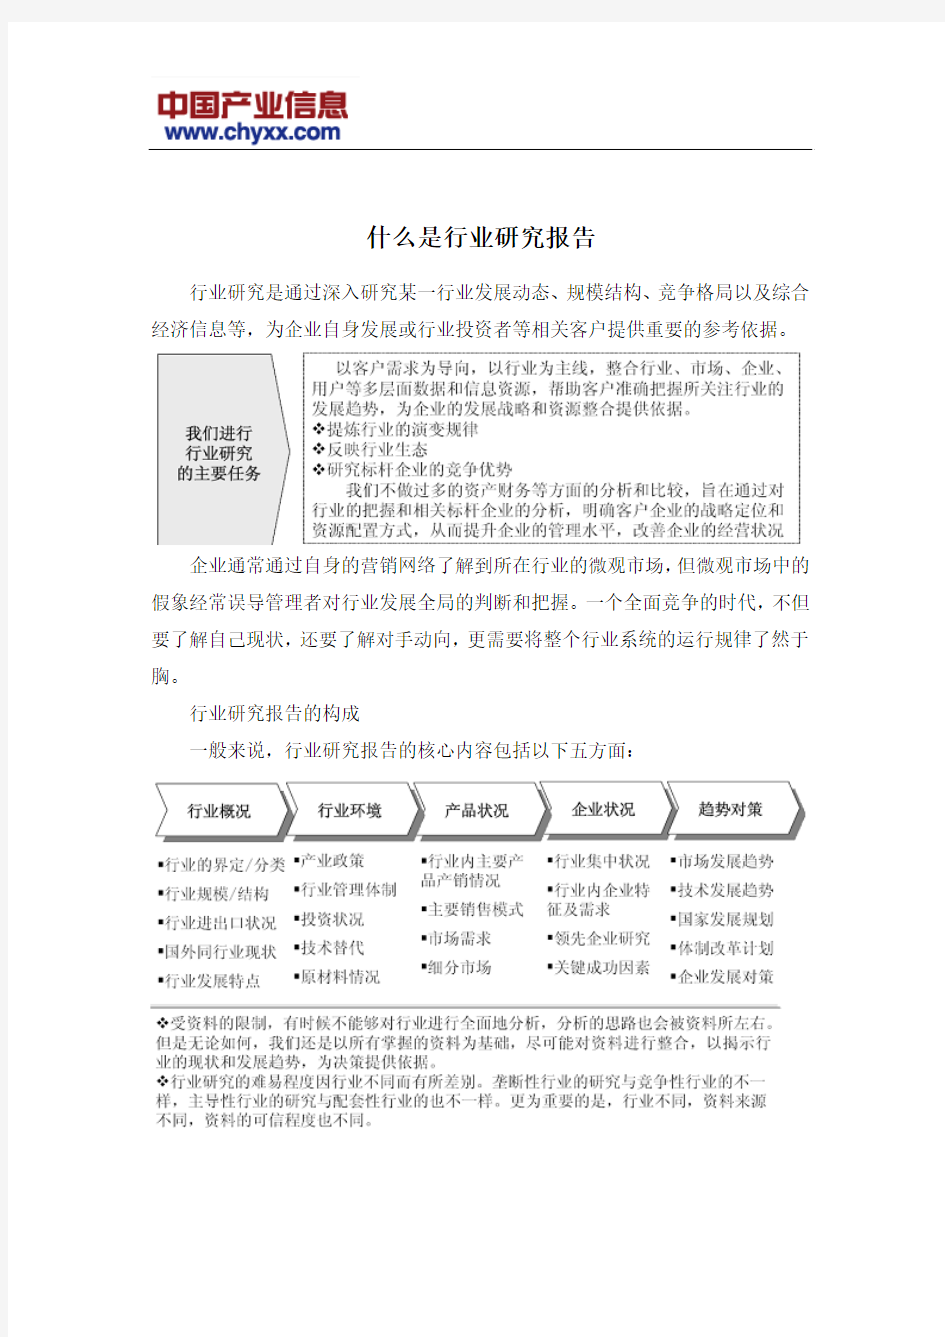 2015-2020年中国铜包钢接地棒市场专项调研报告